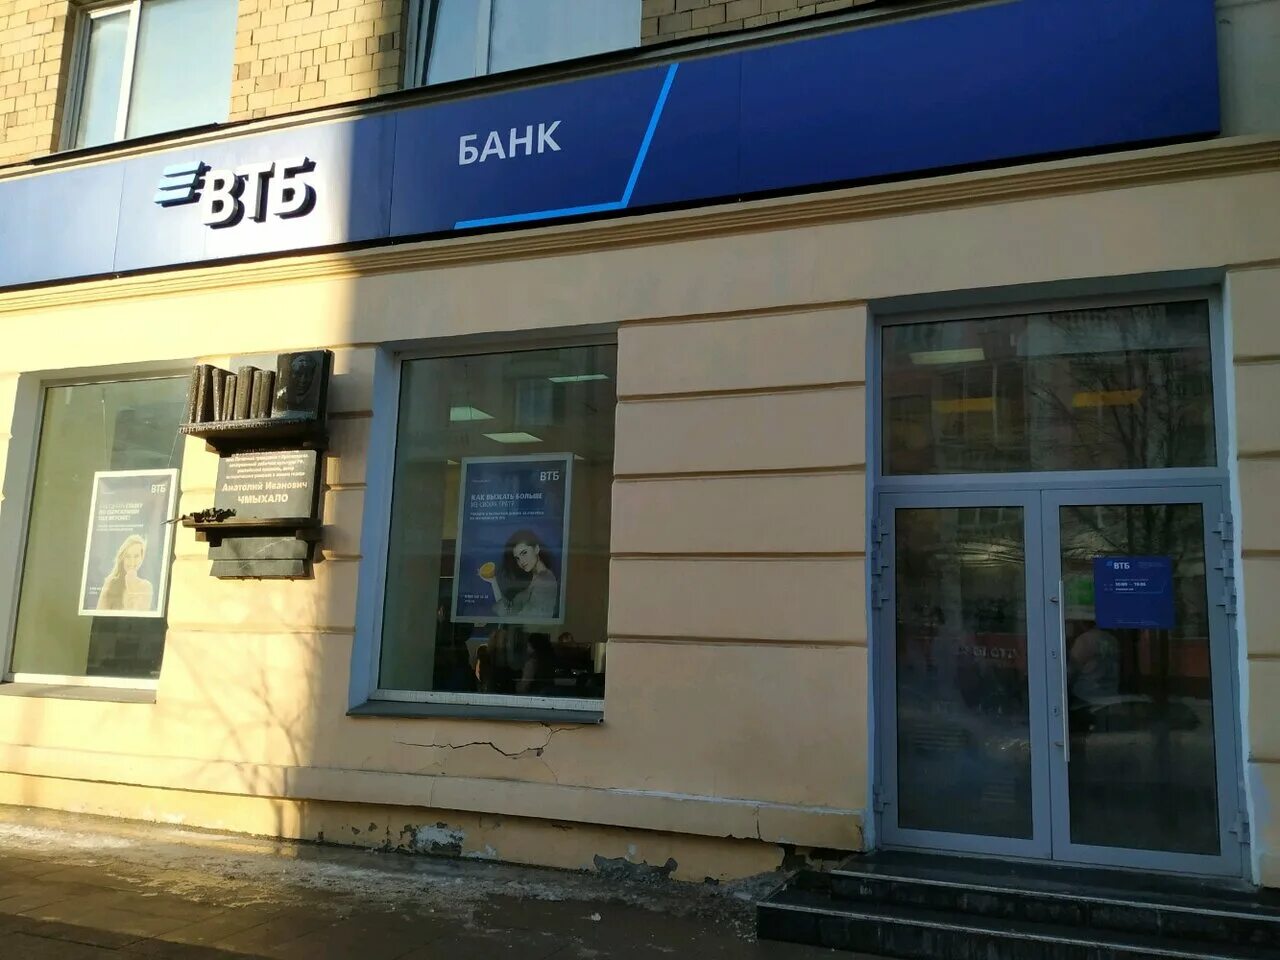 Ленина 46 Красноярск банк. Октябрьская революция банк втб